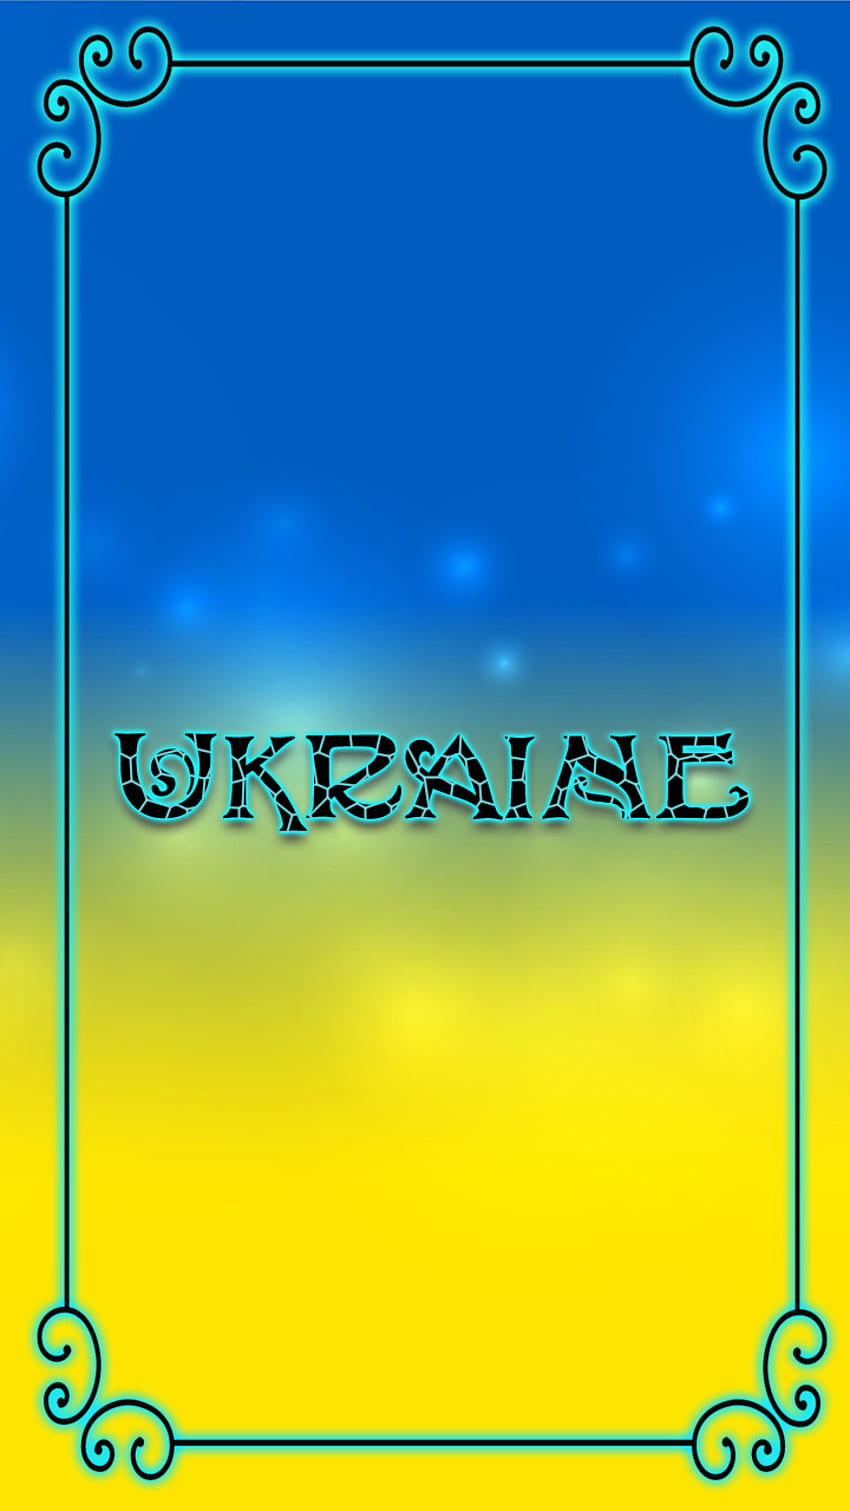 Ucrania _, símbolo, bandera, standwithukraine, azul, paz, patrón, amarillo, texto, marco fondo de pantalla del teléfono